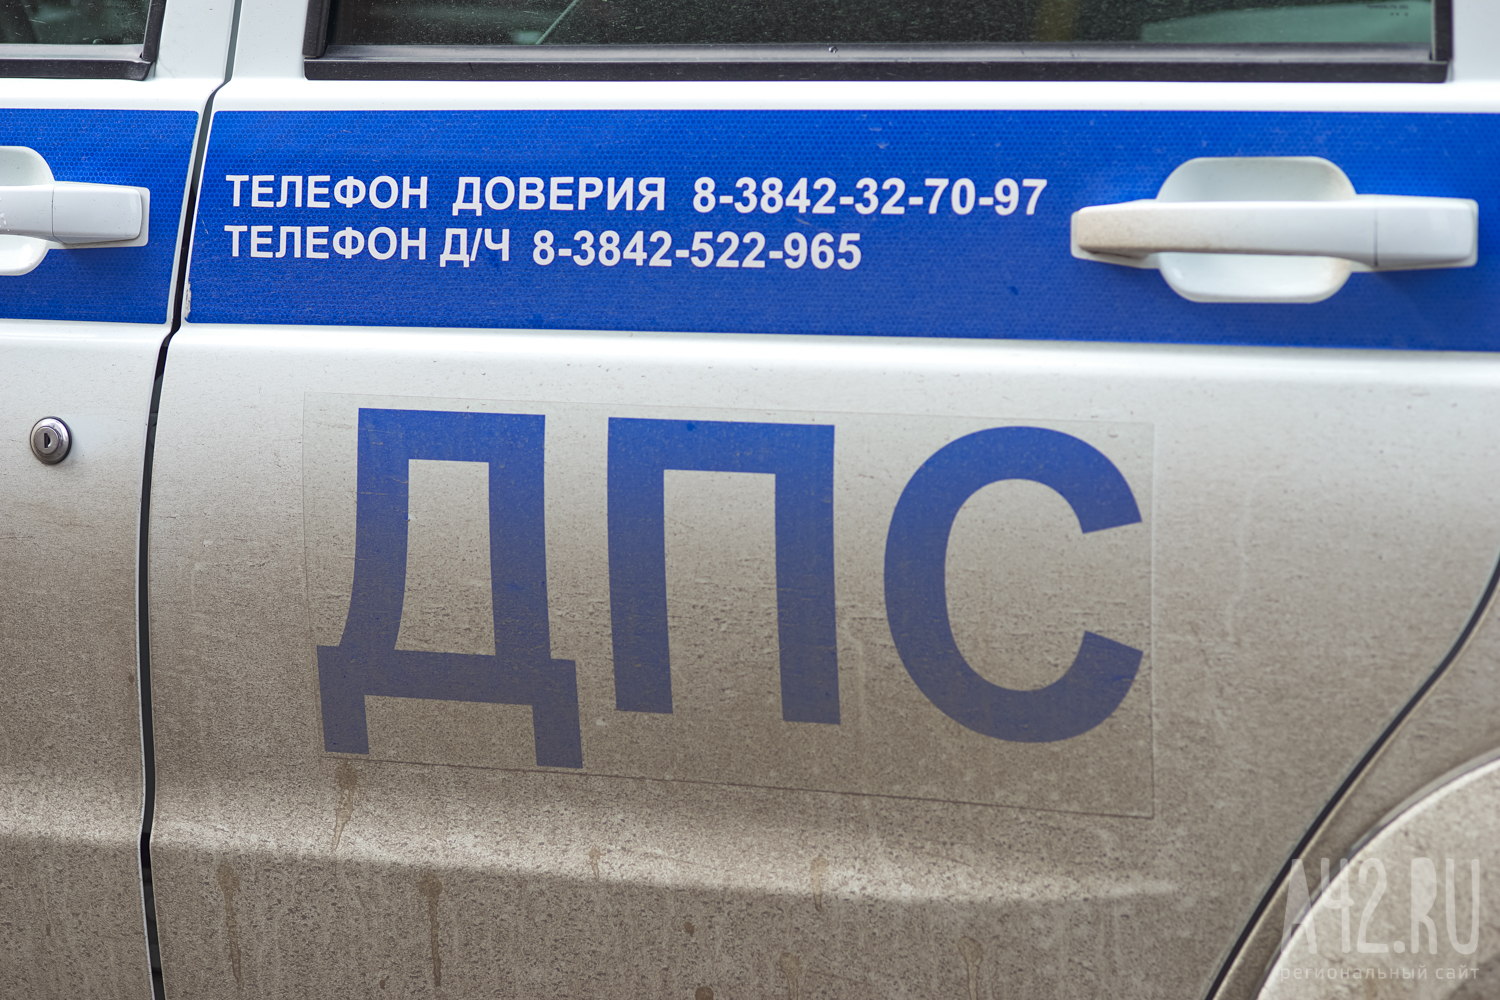 Соцсети: два легковых автомобиля жёстко столкнулись в Кузбассе